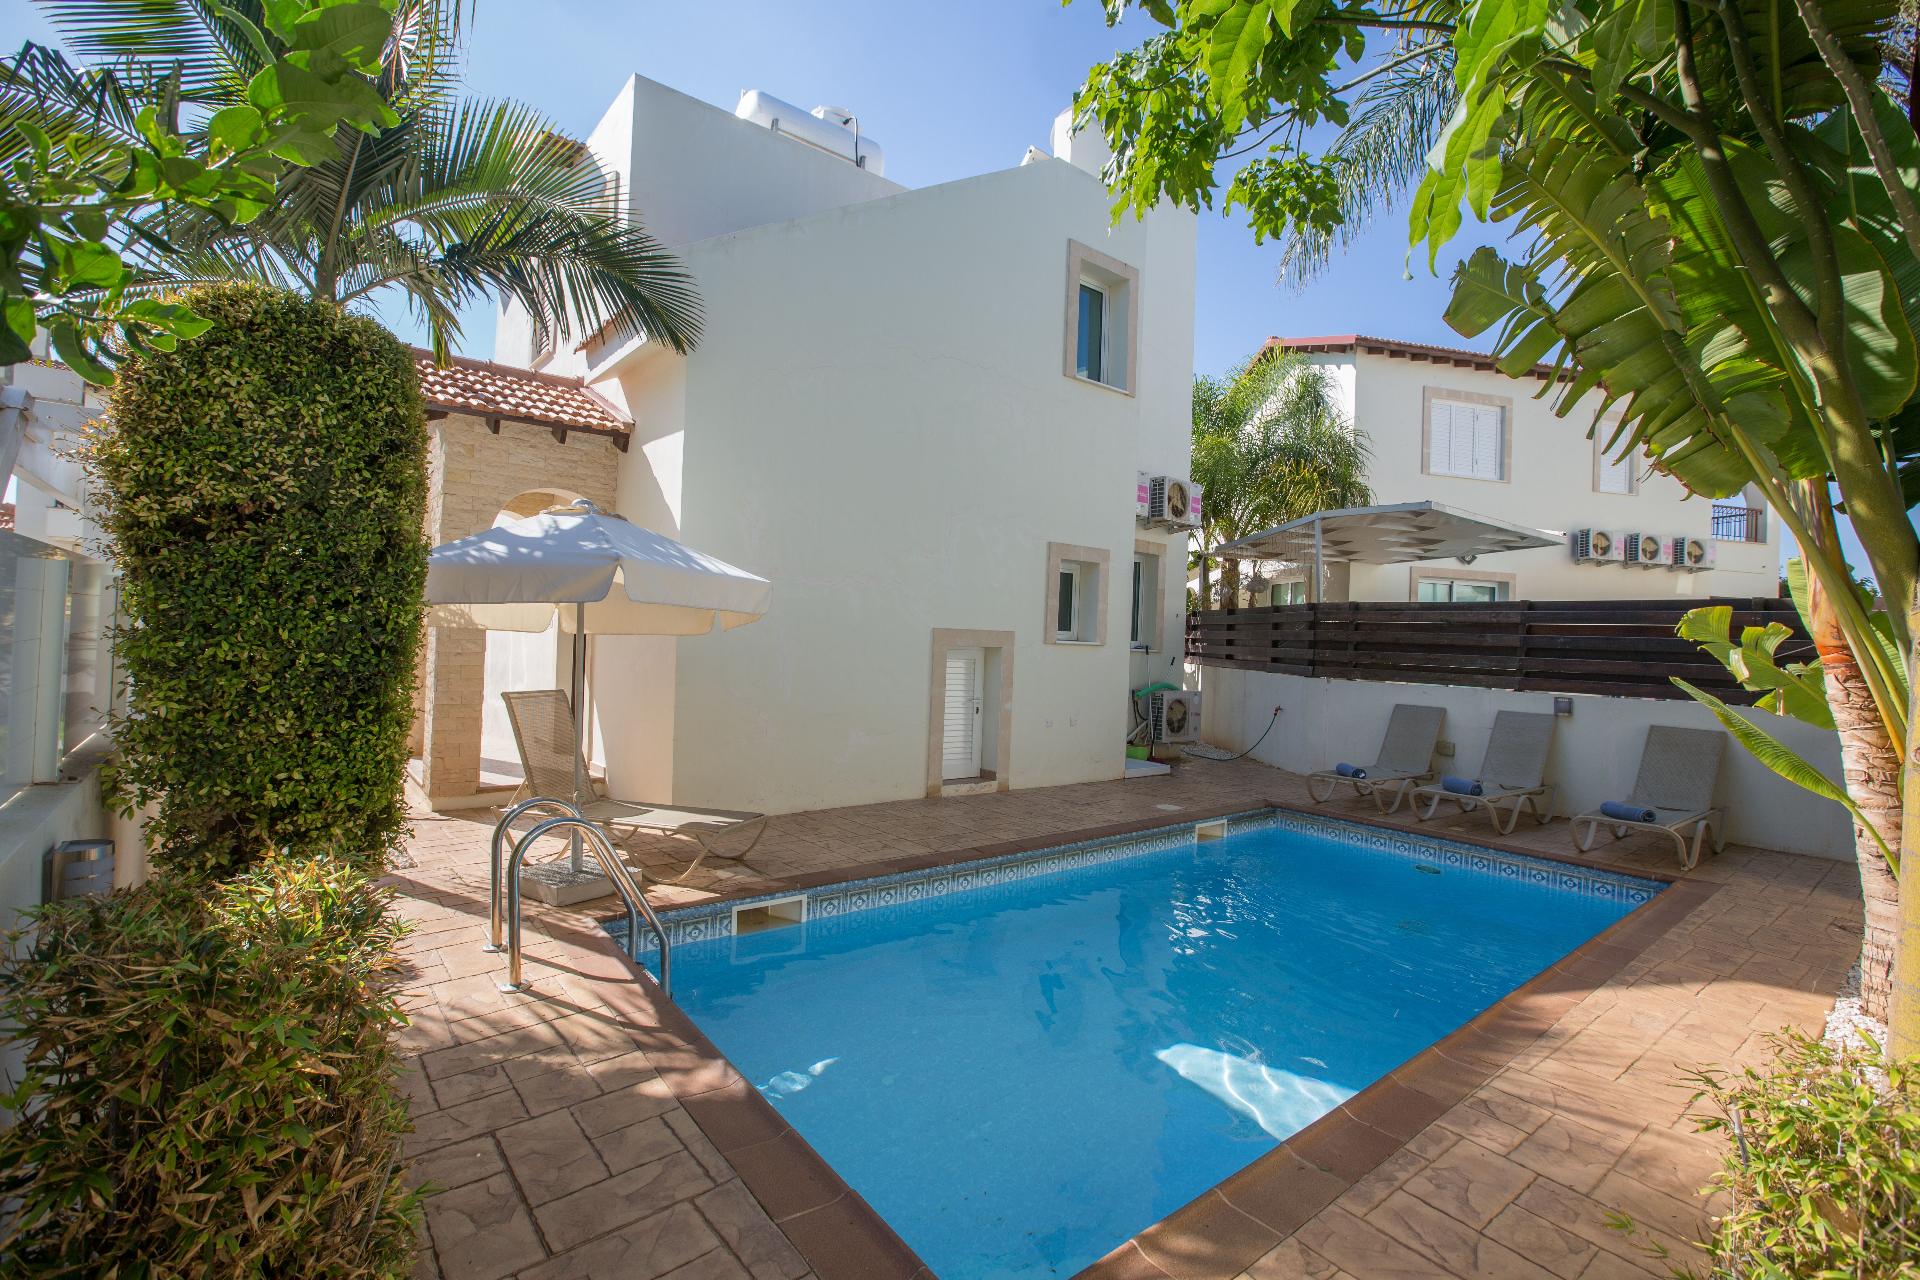 Ferienhaus mit Privatpool für 4 Personen  + 1 Ferienhaus in Zypern